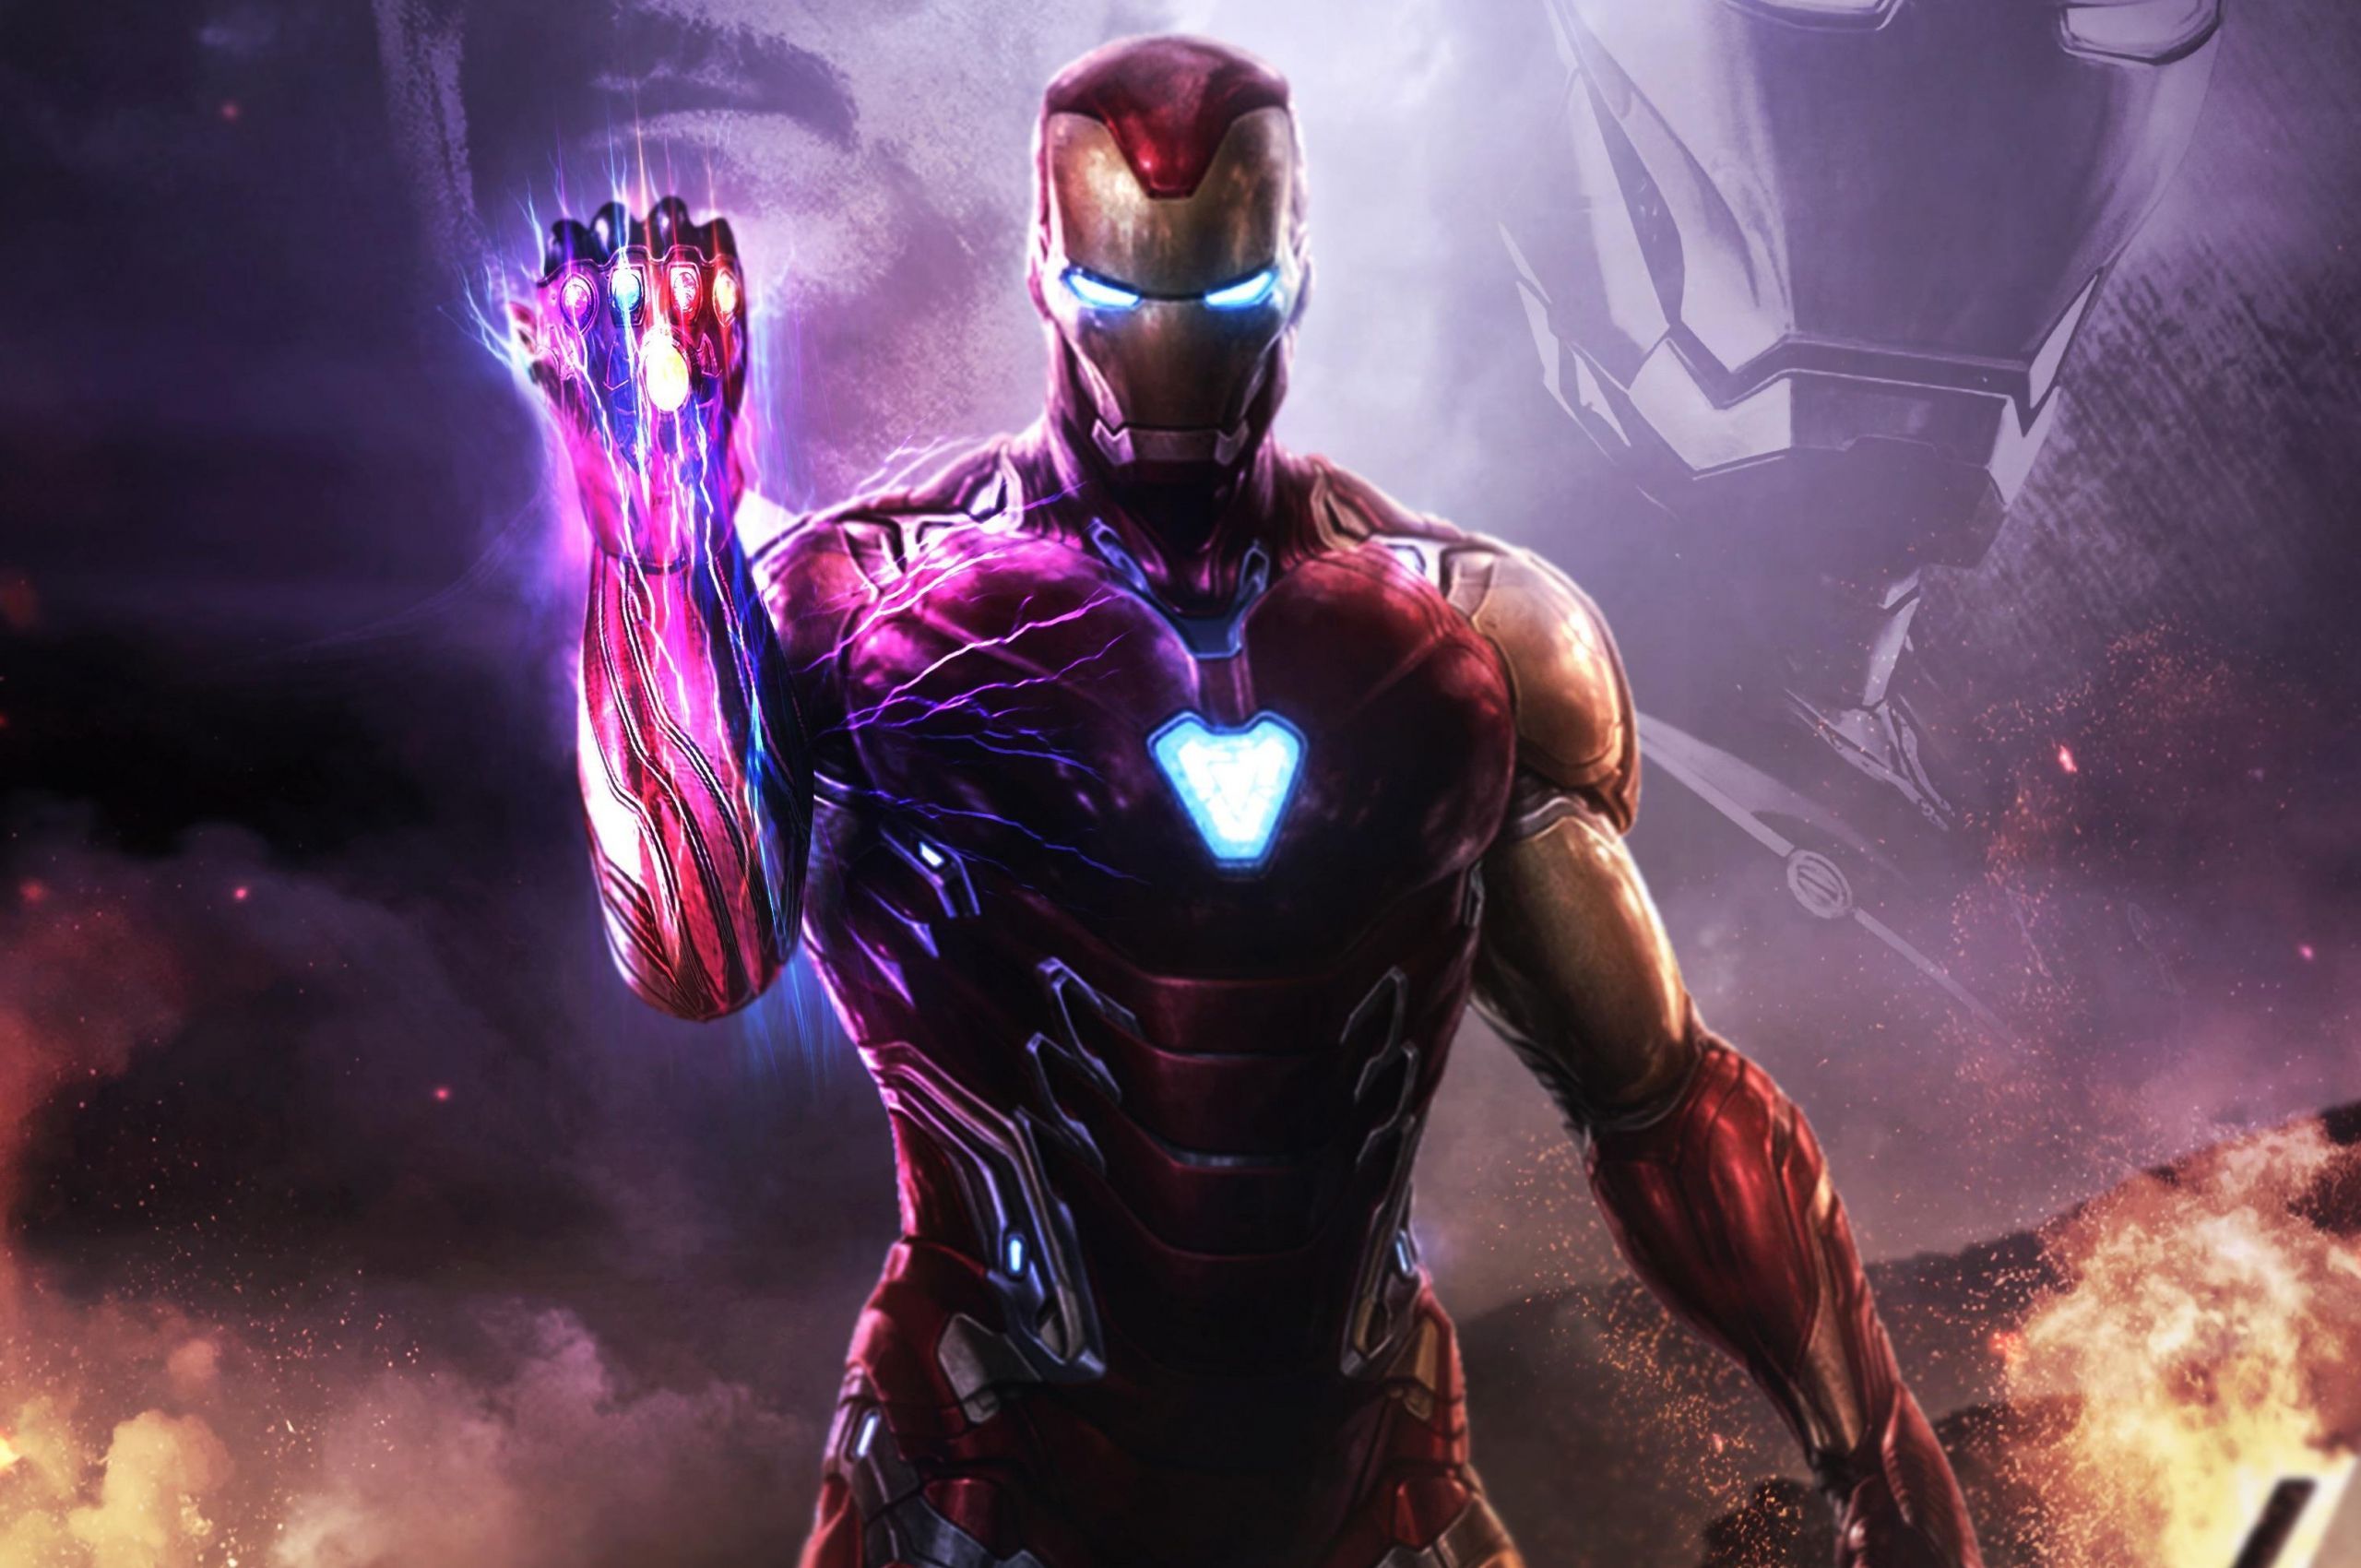 Iron Man Infinity War 4K Wallpaper Free Iron Man Infinity War 4K Background